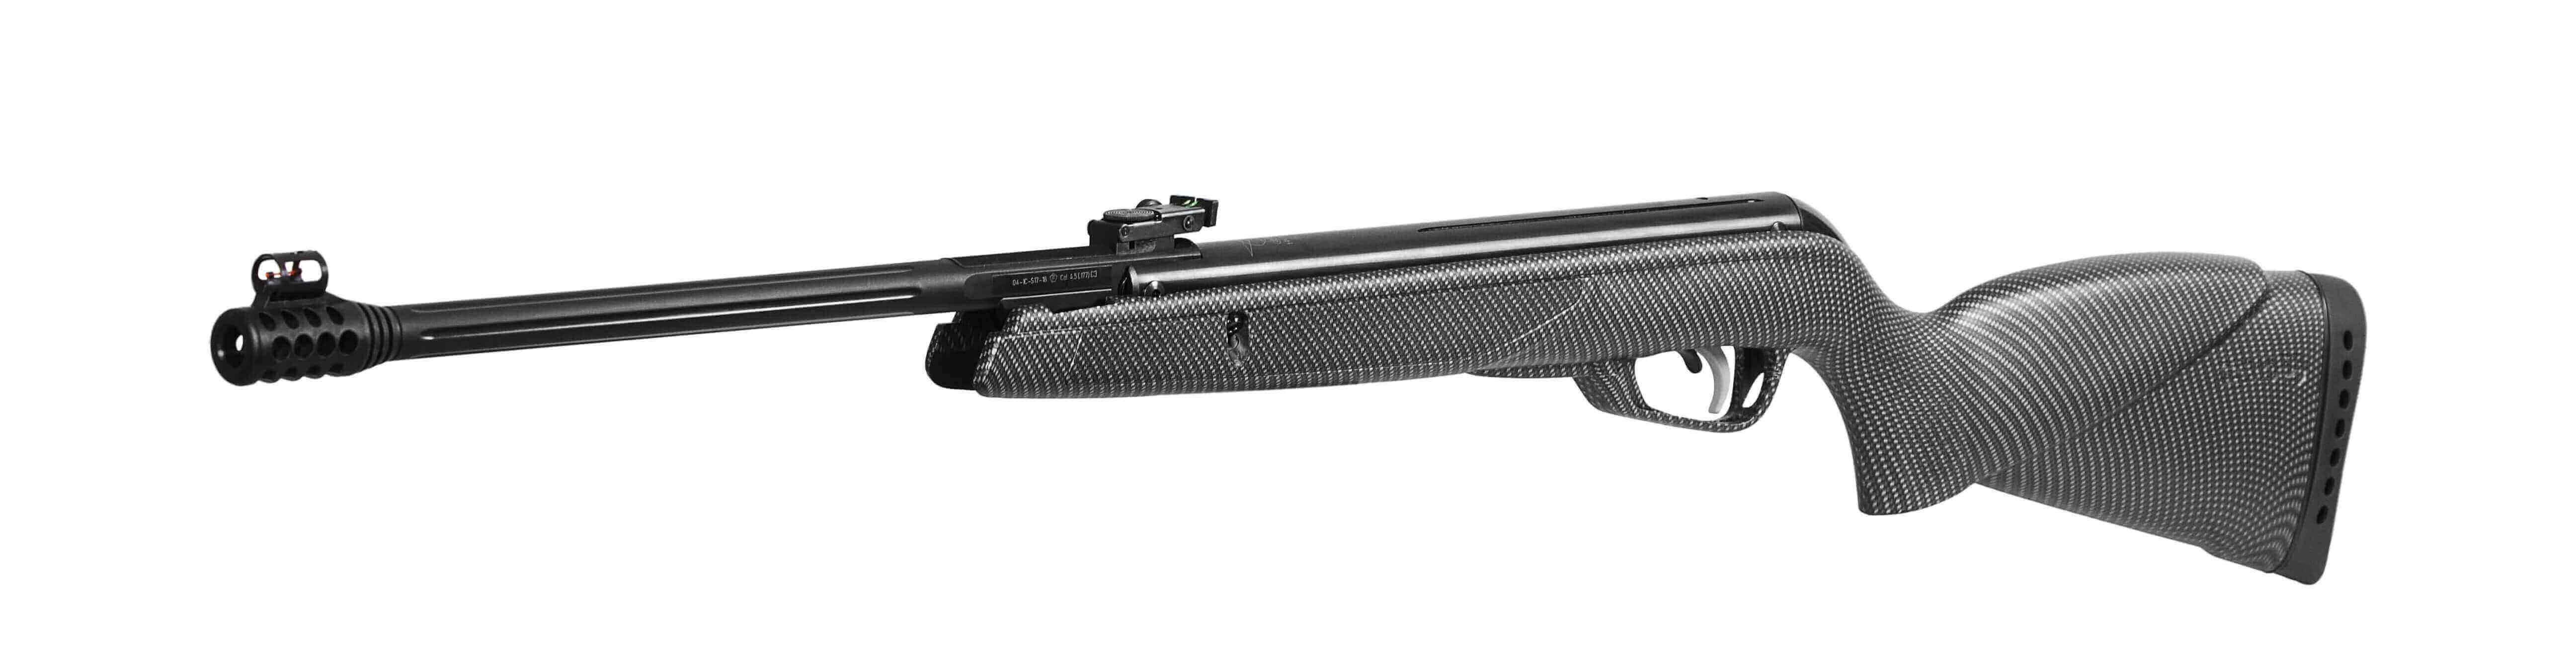 REVE pesca y caza - El rifle Gamo Black 1000 AS 5.5 es una ligera y potente  carabina capaz de desarrollar 24 Julios de potencia. Cuenta con una culata  sintética de color